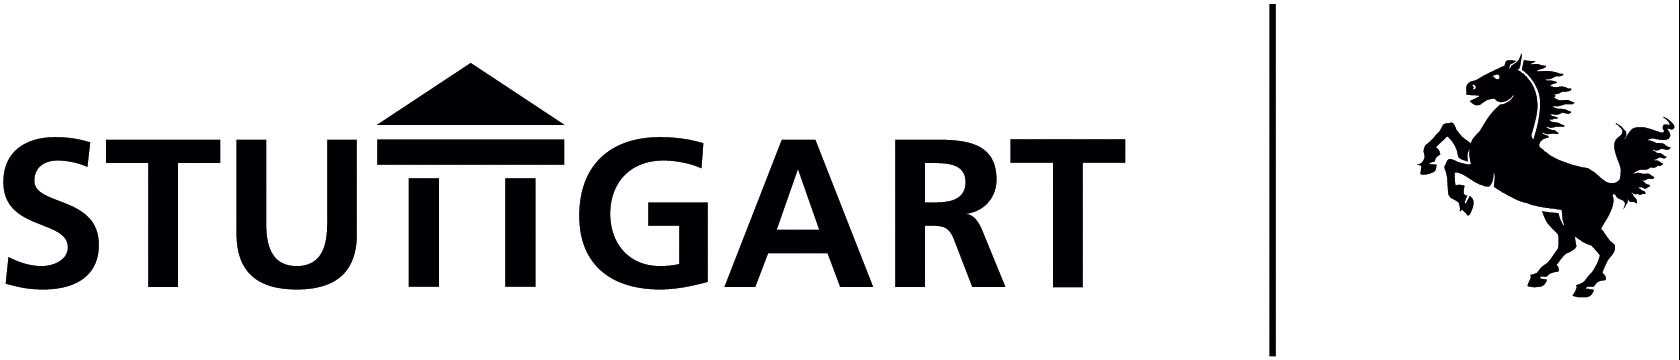 stuttgart_logo